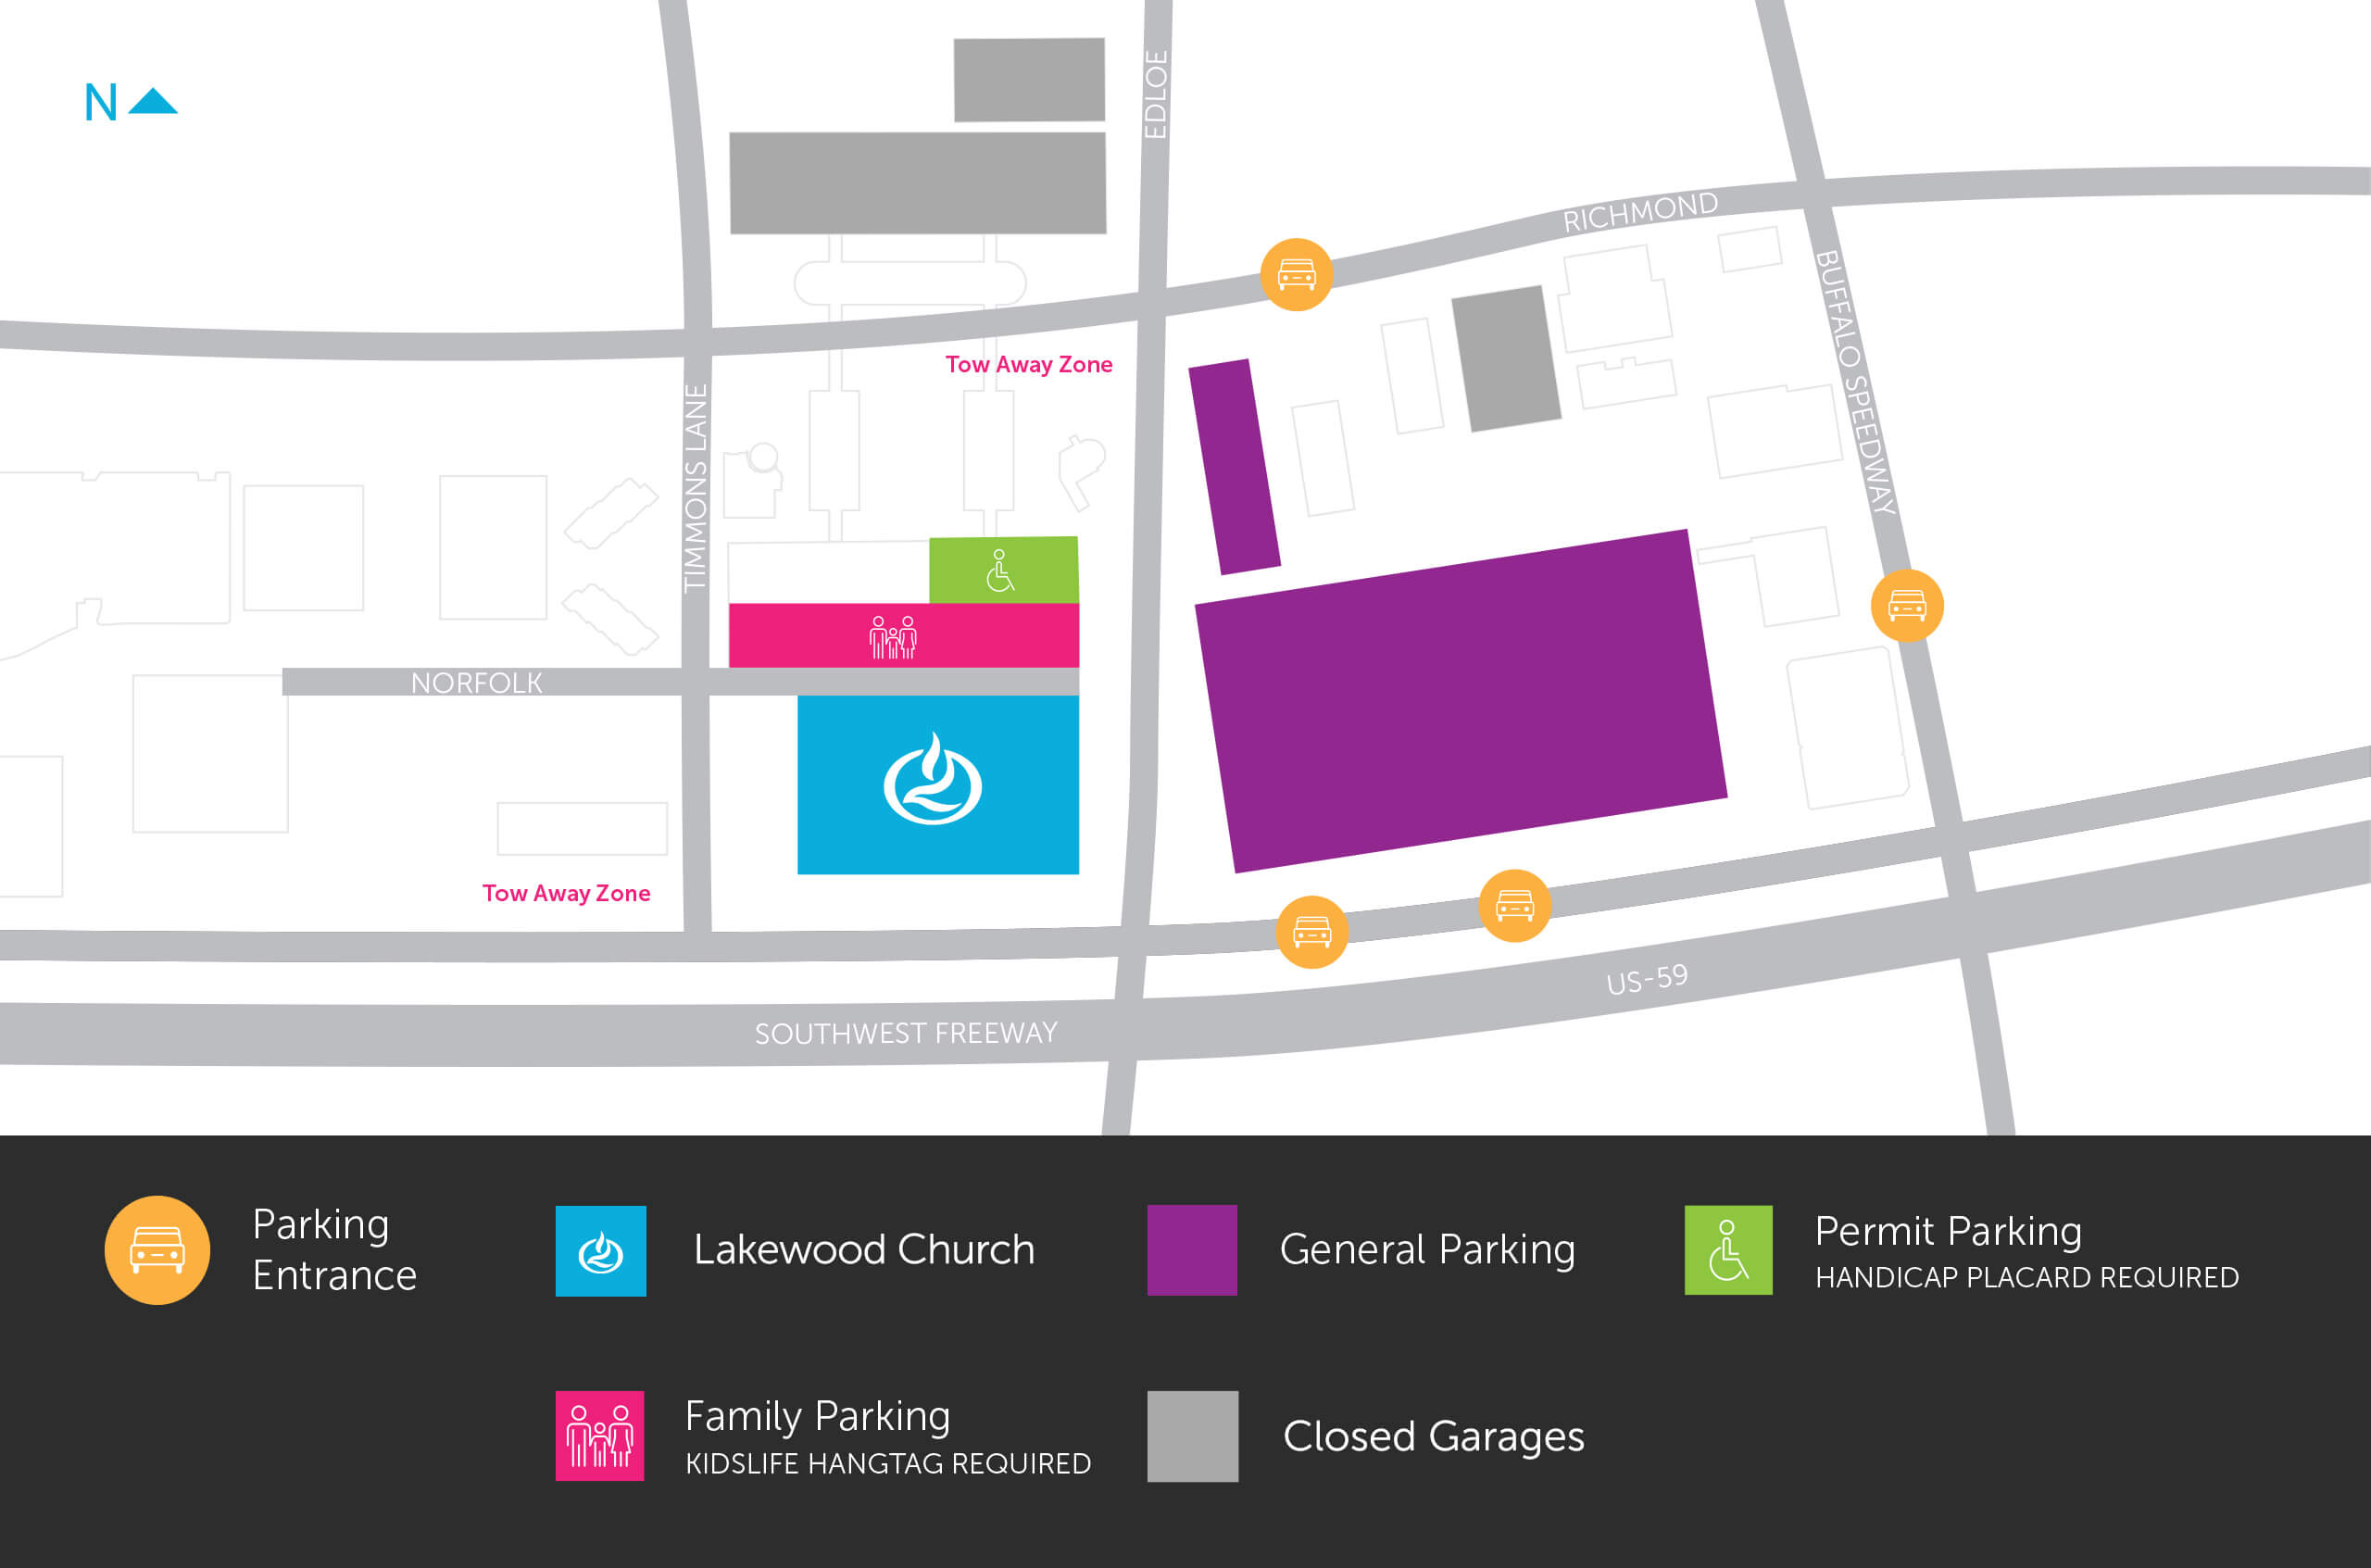 lakewood church plan your visit